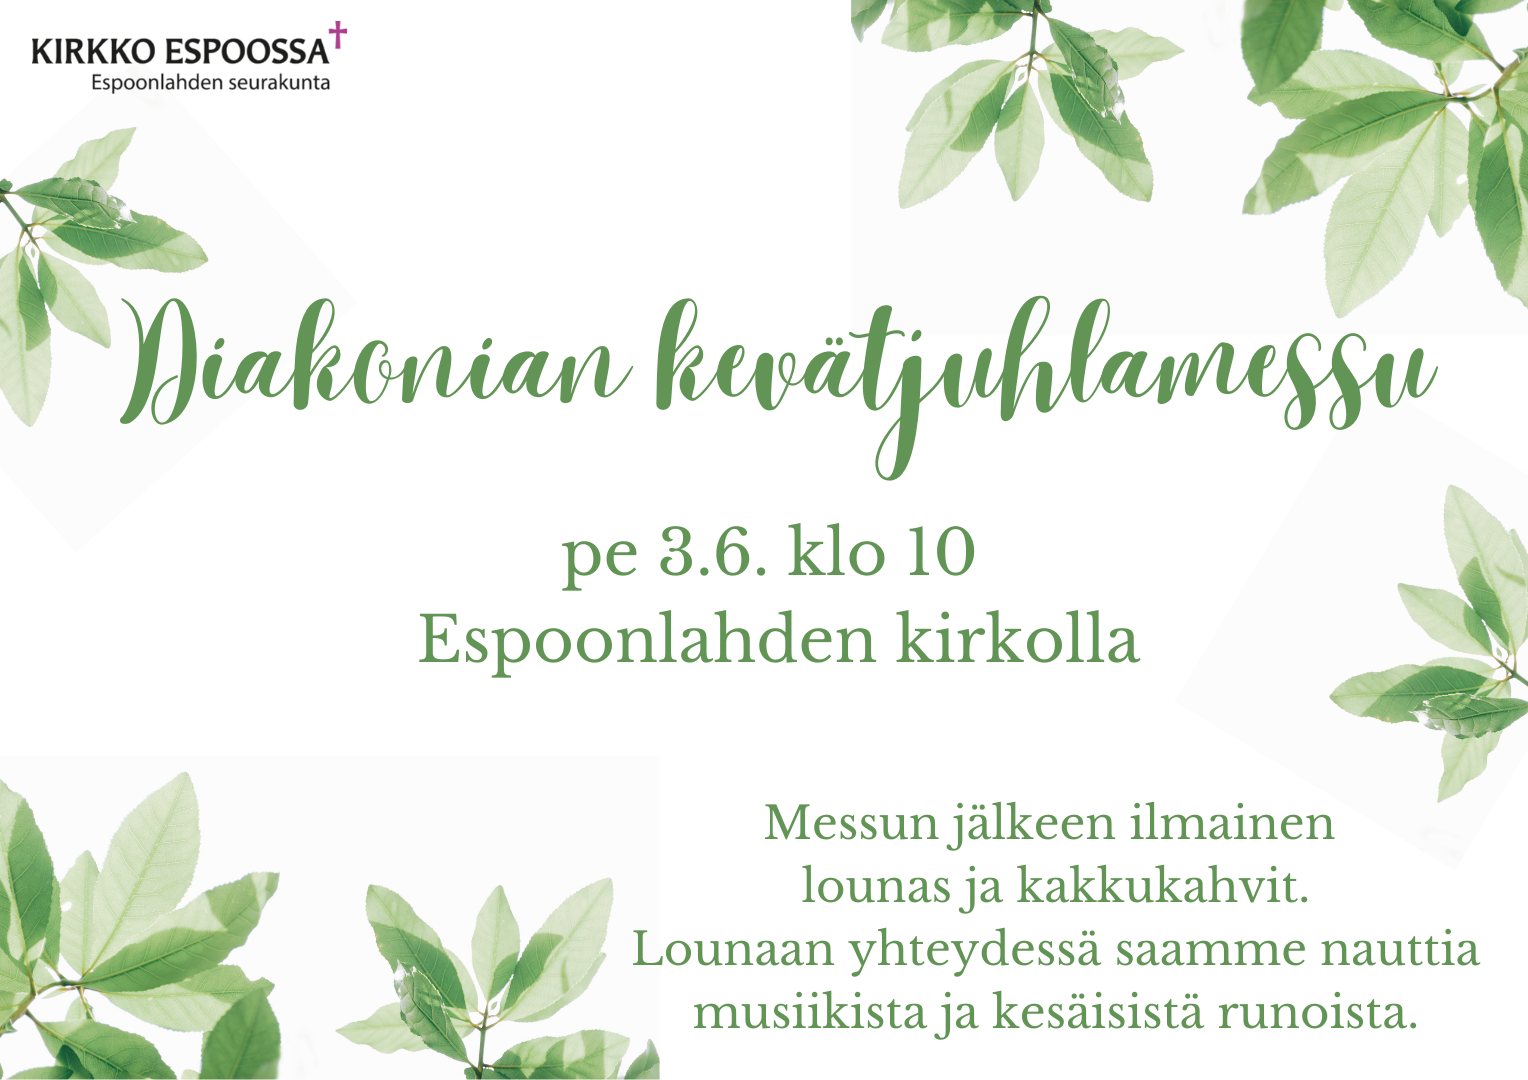 Mainos. Diakonian kevätjuhlamessu perjantaina 3.6. klo 10 Espoonlahden kirkolla. Ilmainen lounas ja kahvit.